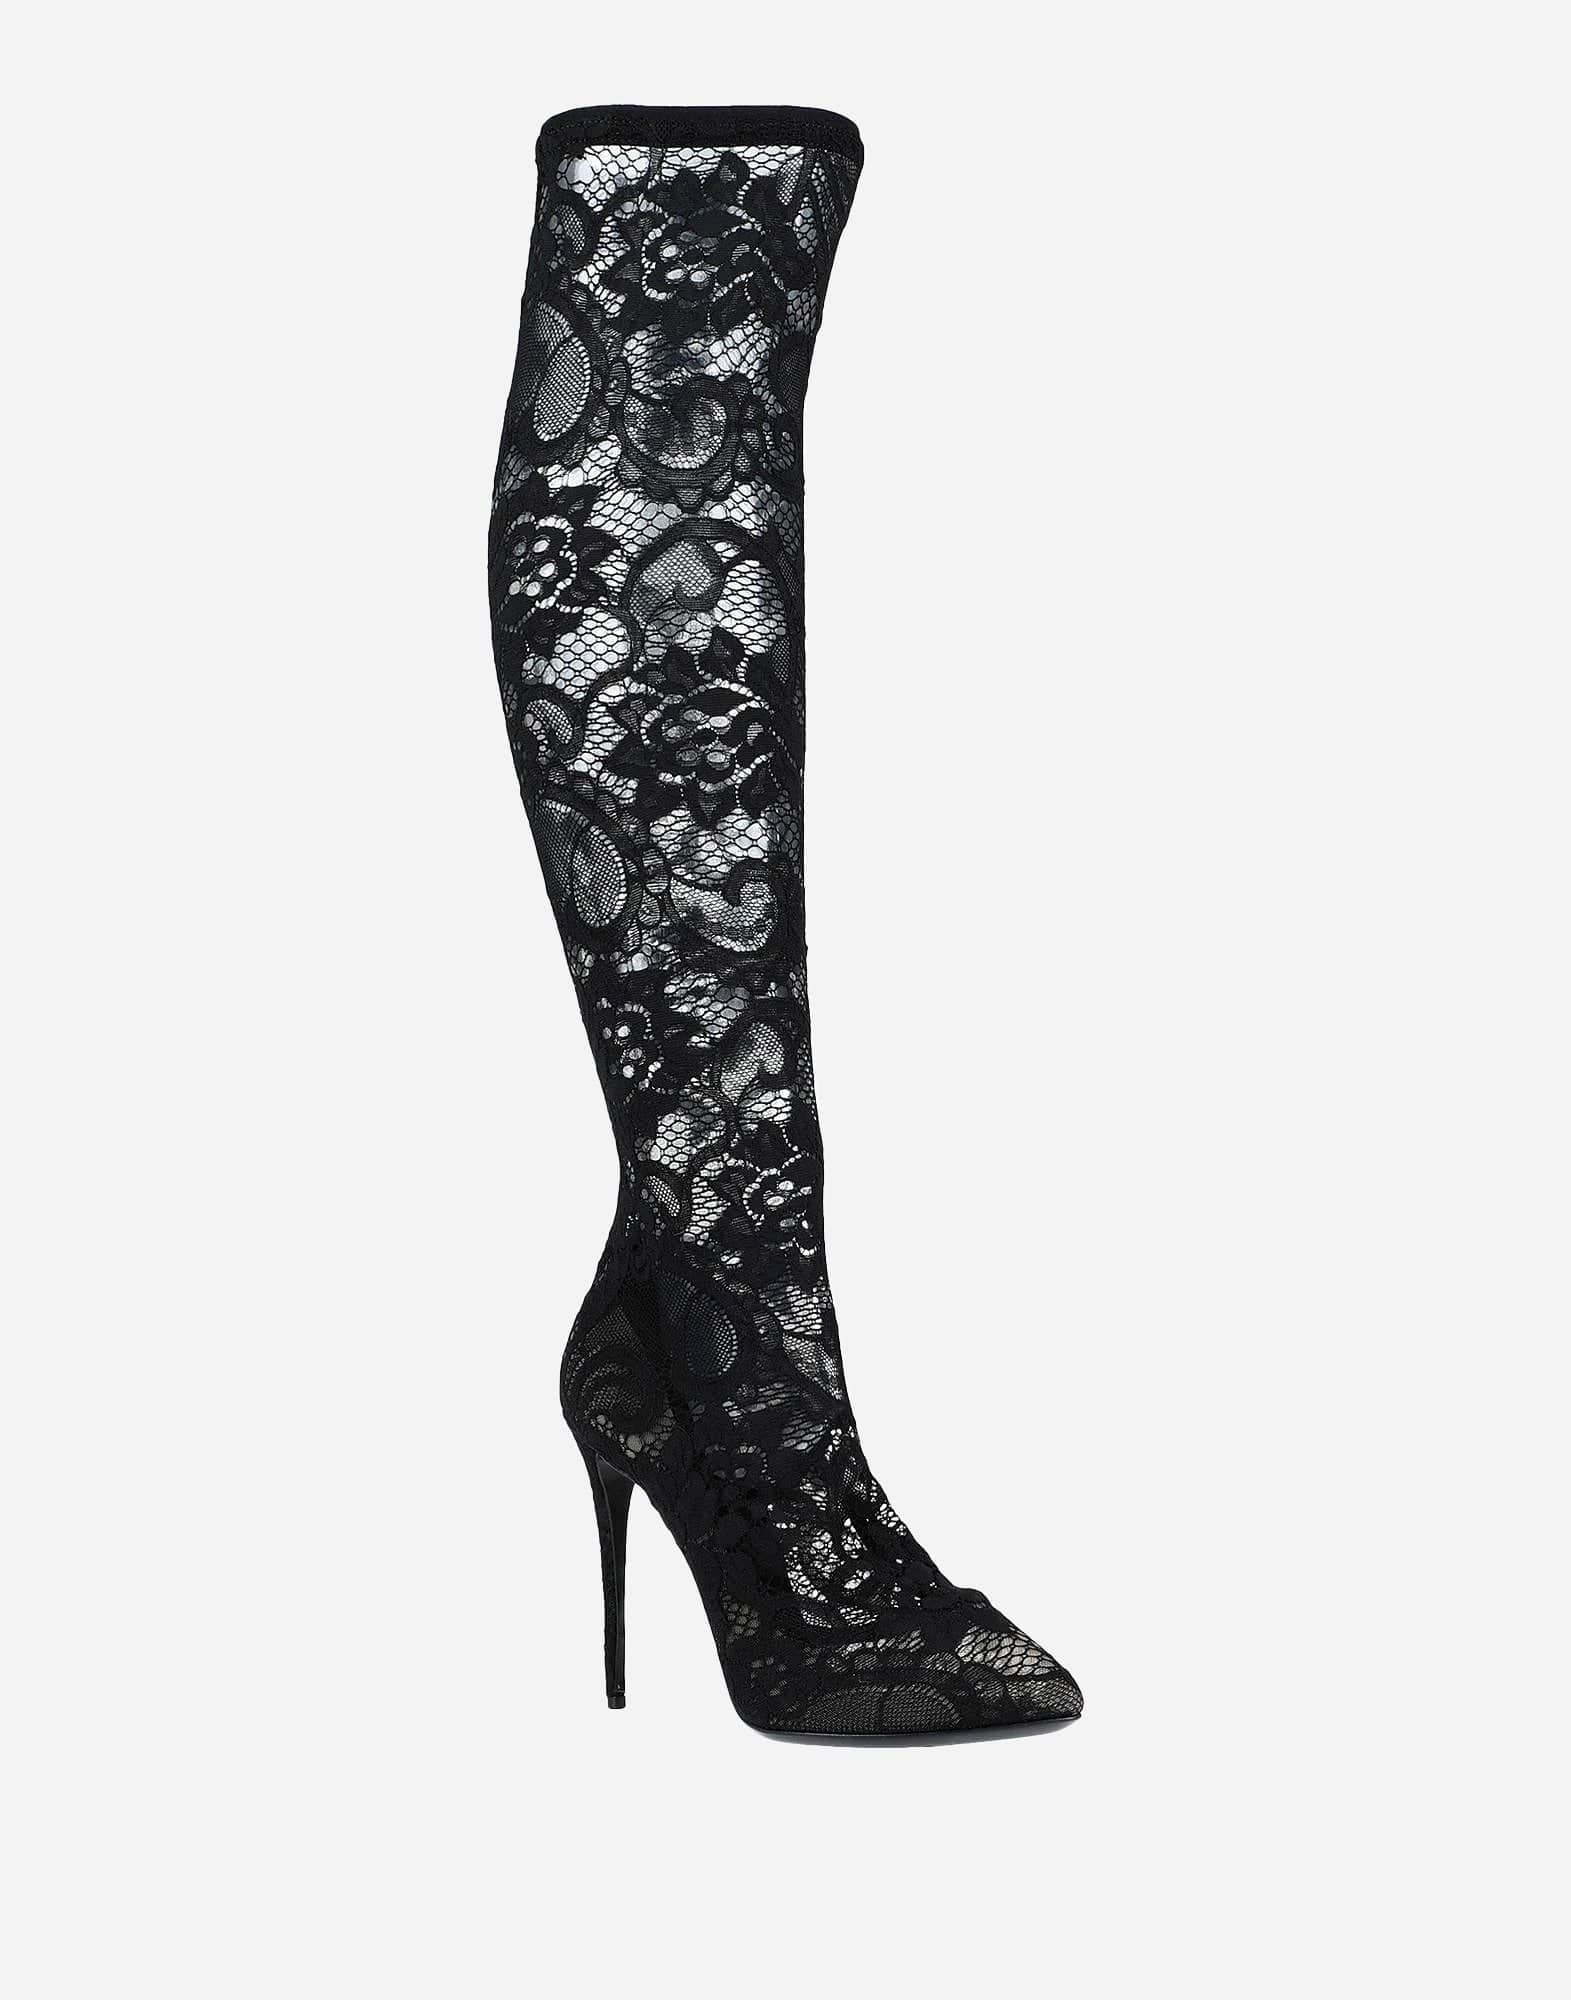 Dolce & Gabbana Taormina Lace Boots